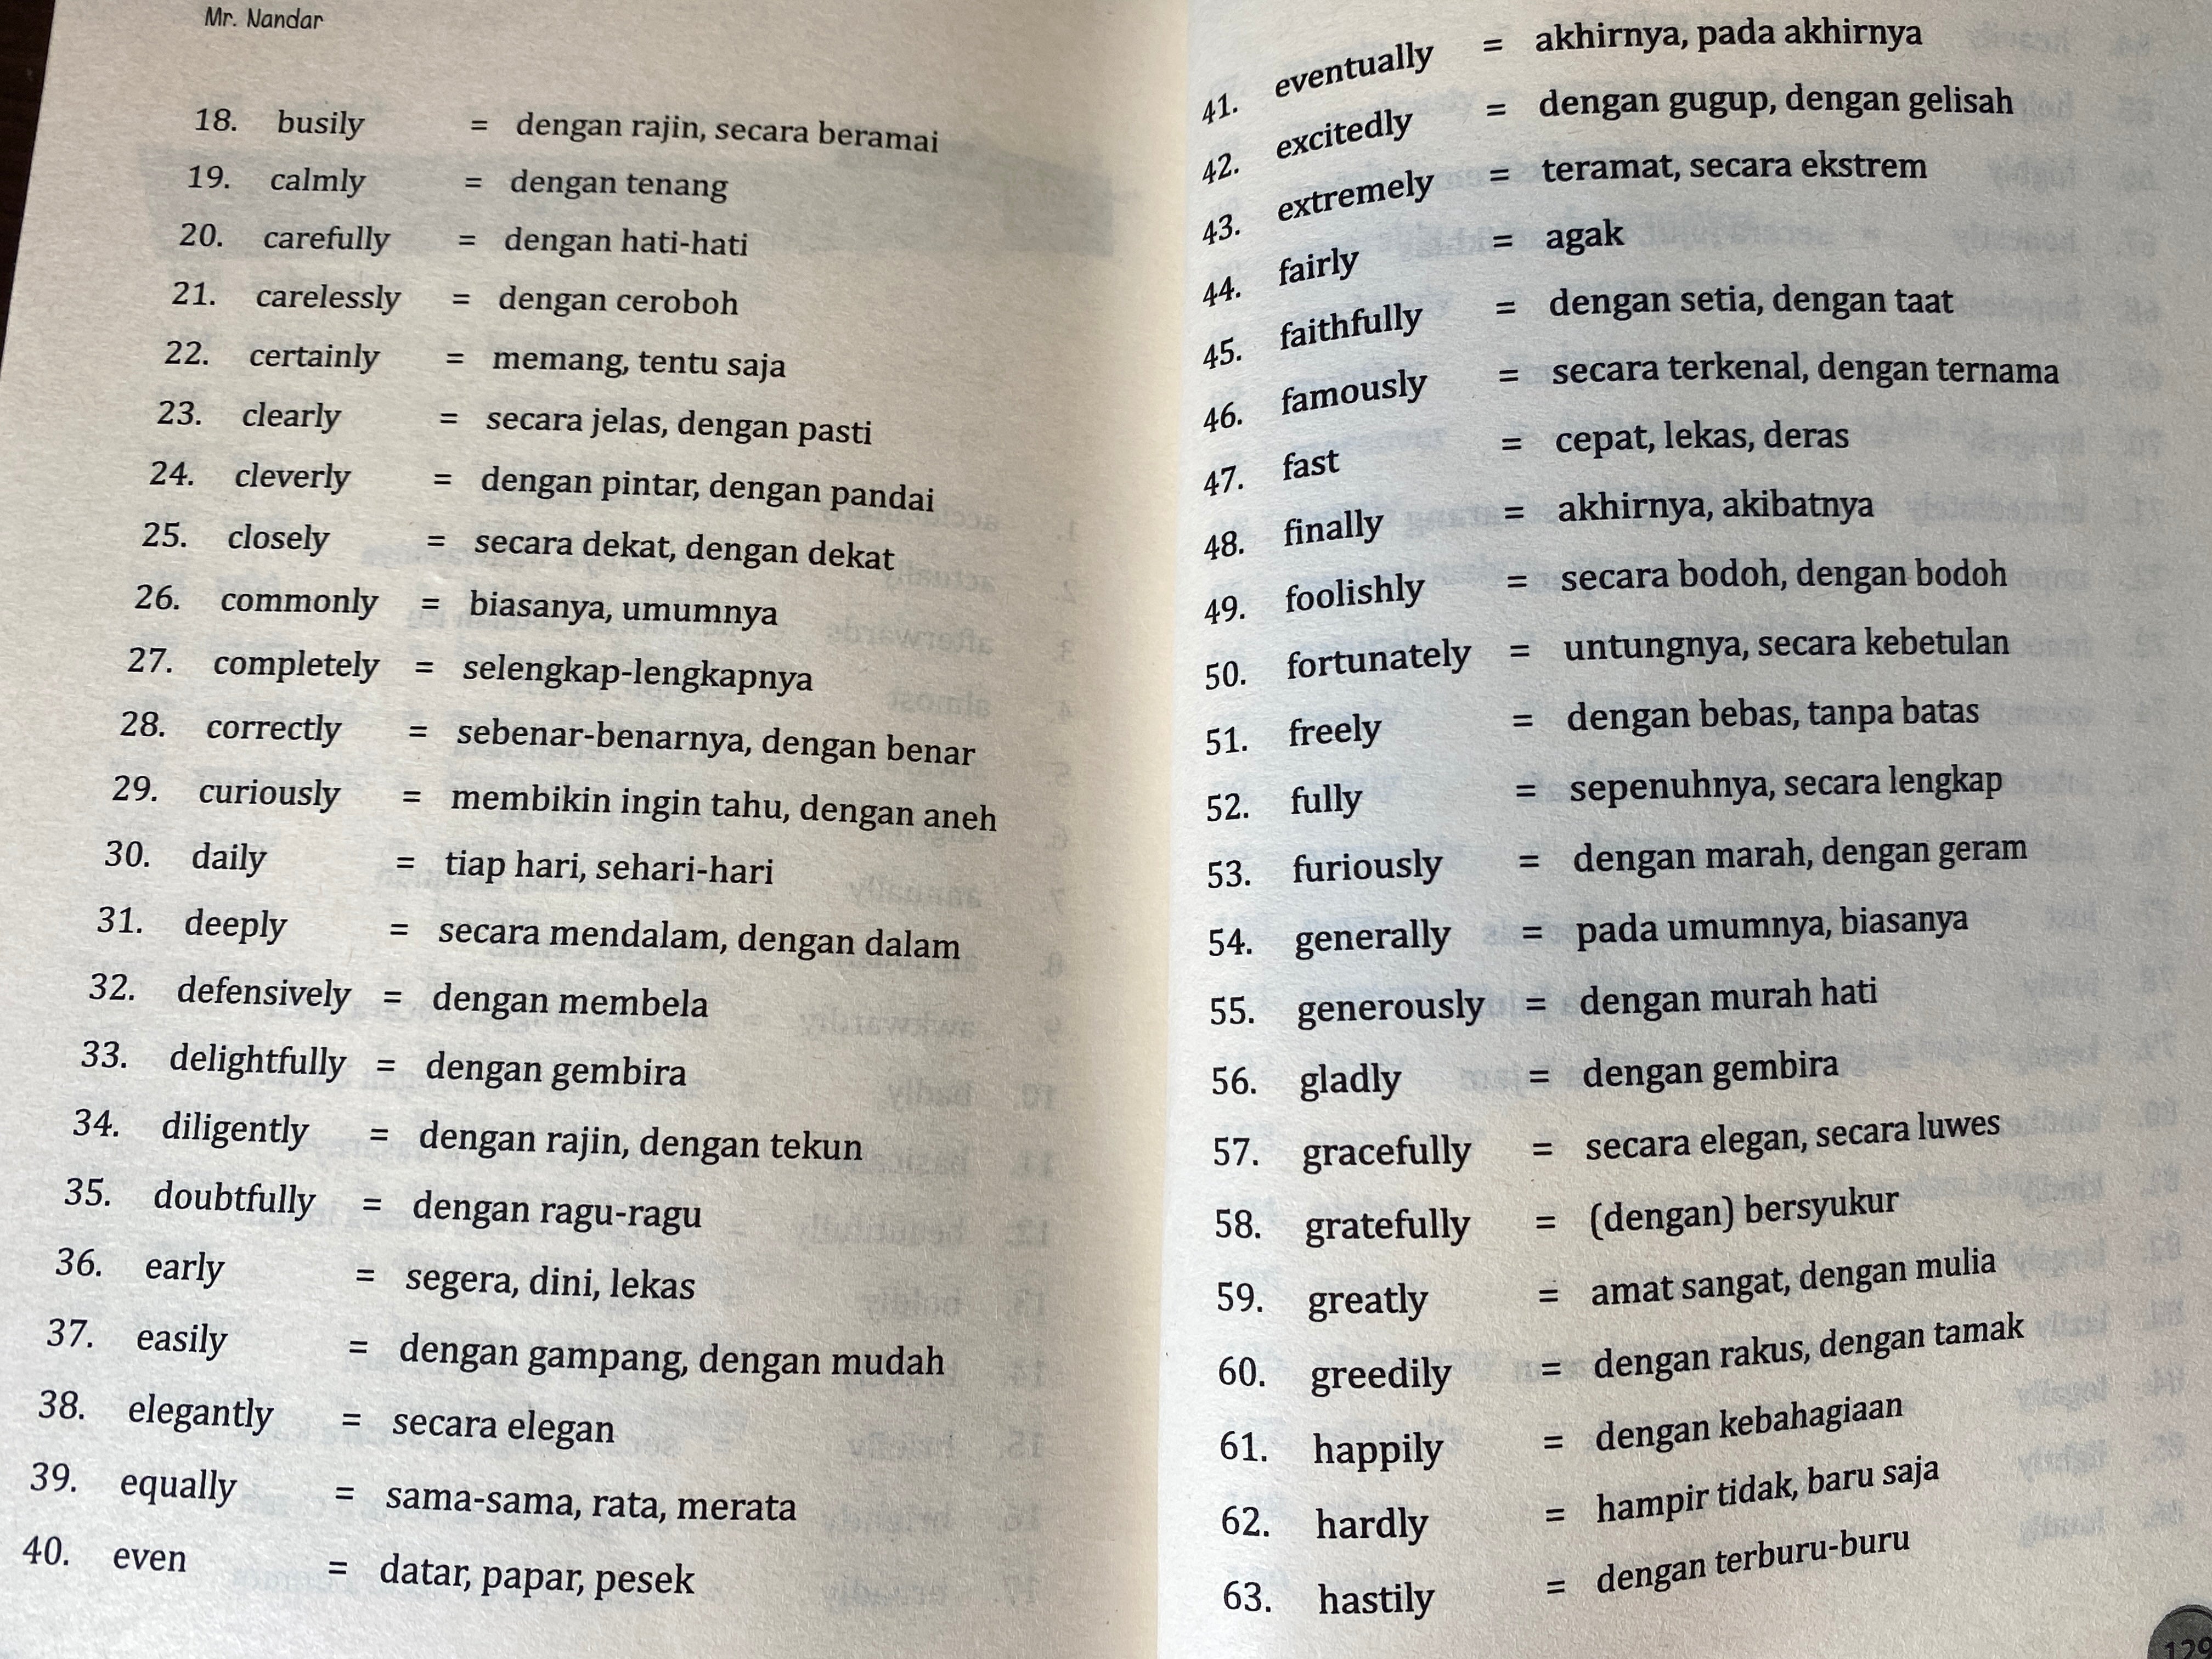 Buku yang wajib dimiliki untuk belajar mandiri bahasa Indonesia, 52 contoh percakapan bahasa Indonesia sehari-hari dan 800 kata praktis bahasa Indonesia serta referensi bilingual Inggris-India